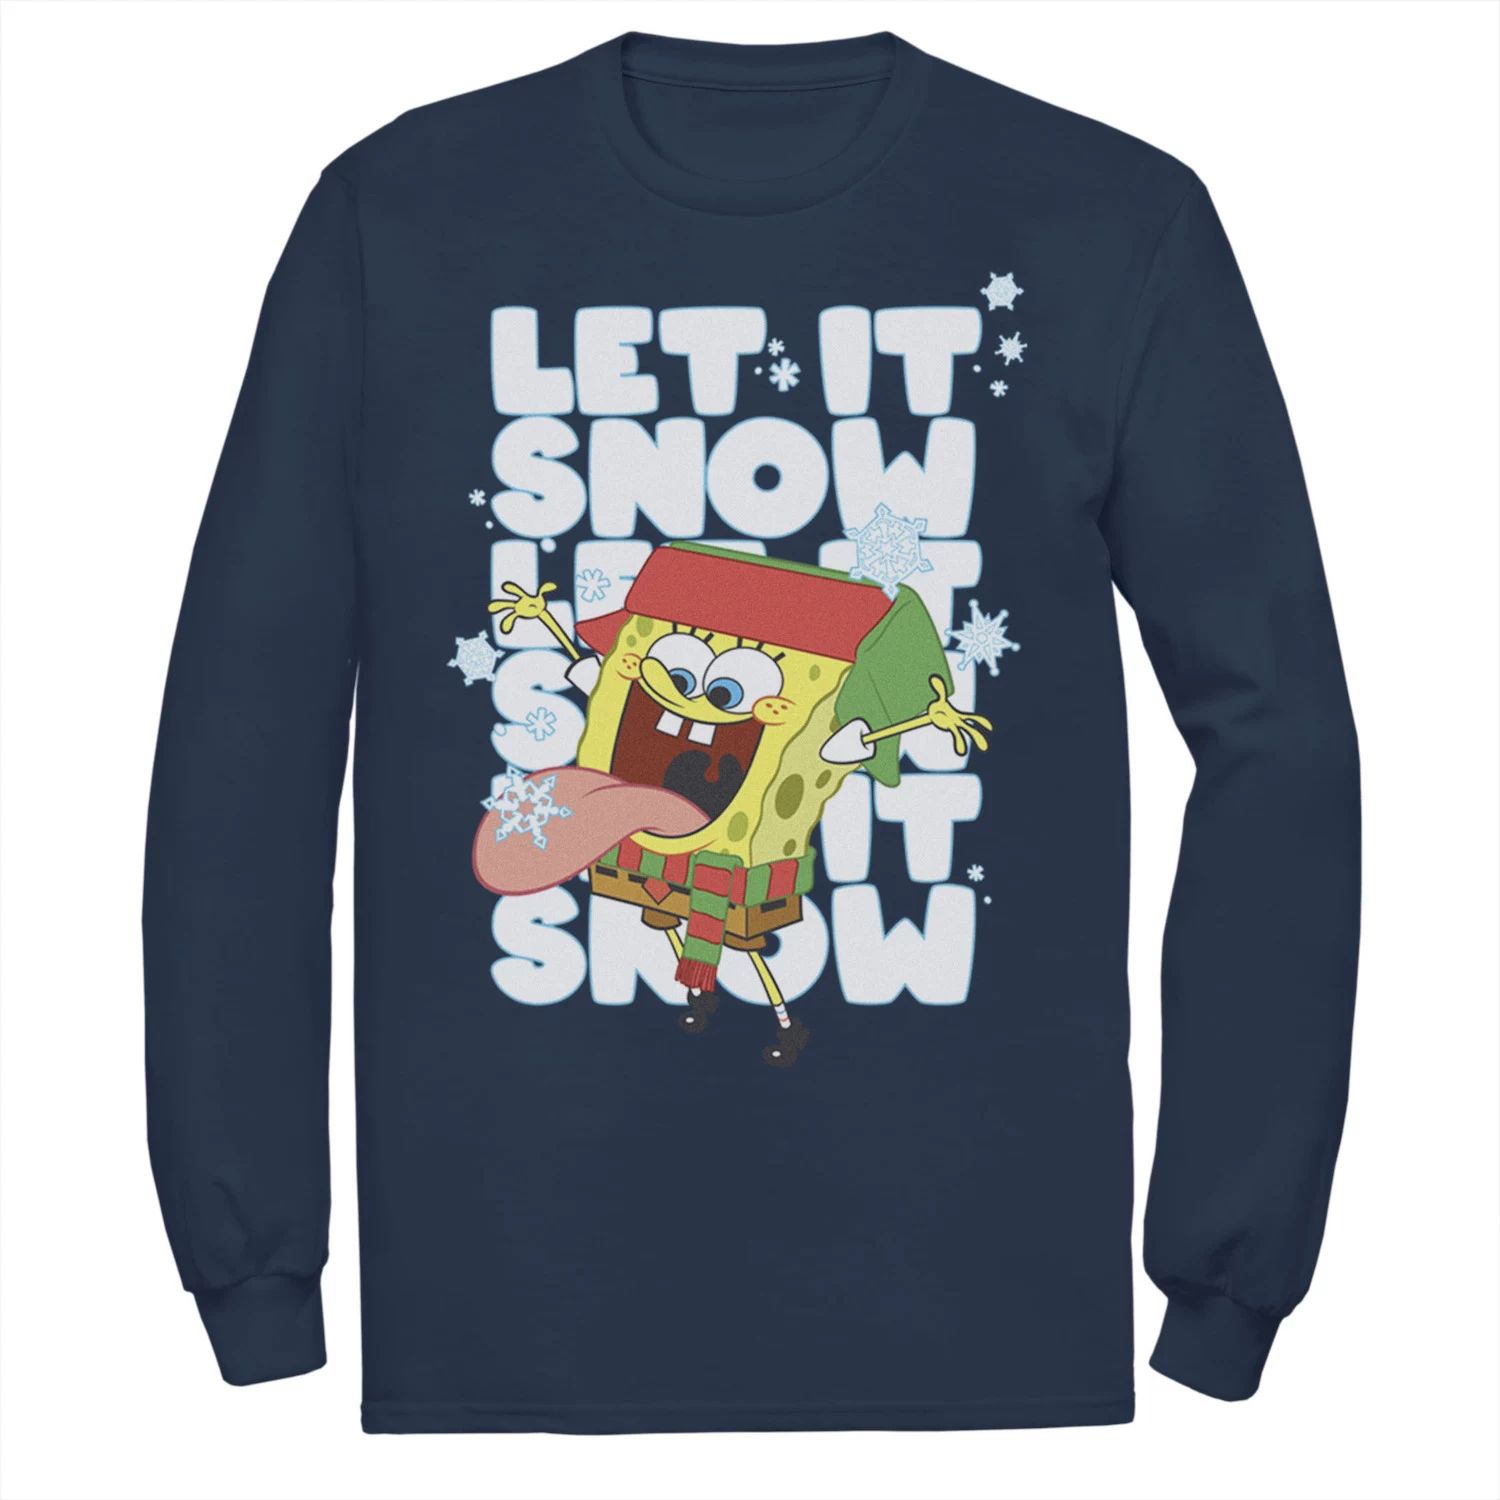 цена Мужская футболка Губка Боб Let It Snow Let It Snow Let It Snow с длинными рукавами и цветами Nickelodeon, синий